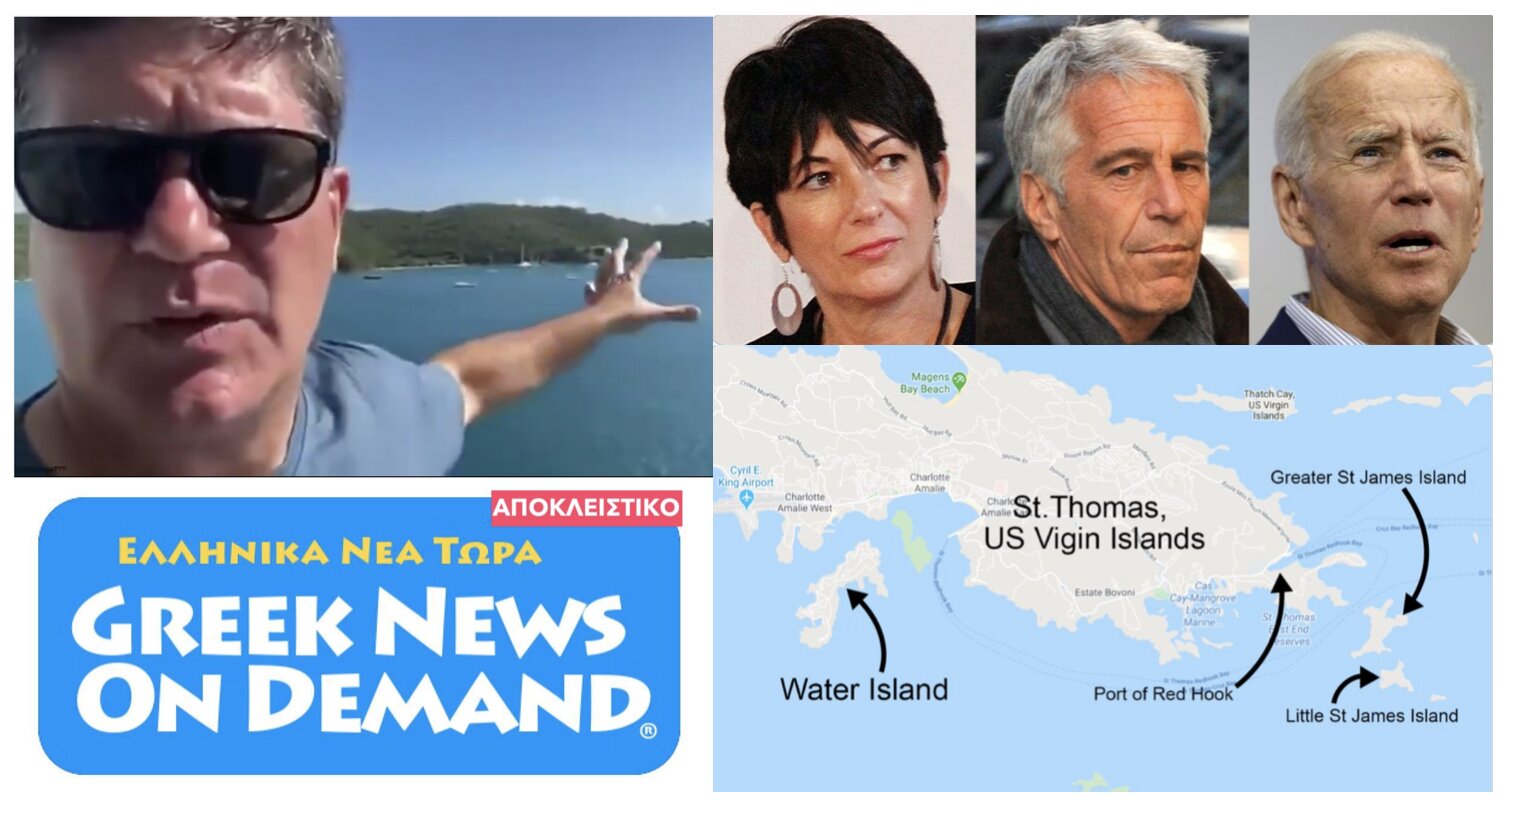 ΜΠΟΥΜ!!!: Κατέχει ιδιωτικό νησάκι δίπλα στο νησάκι παιδοφιλίας του Τζέφρι Επσταϊν ο…ΓΕΡΟΜΠΙΣΜΠΙΚΗΣ ΤΖΟ ΜΠΑΪΝΤΕΝ!!!